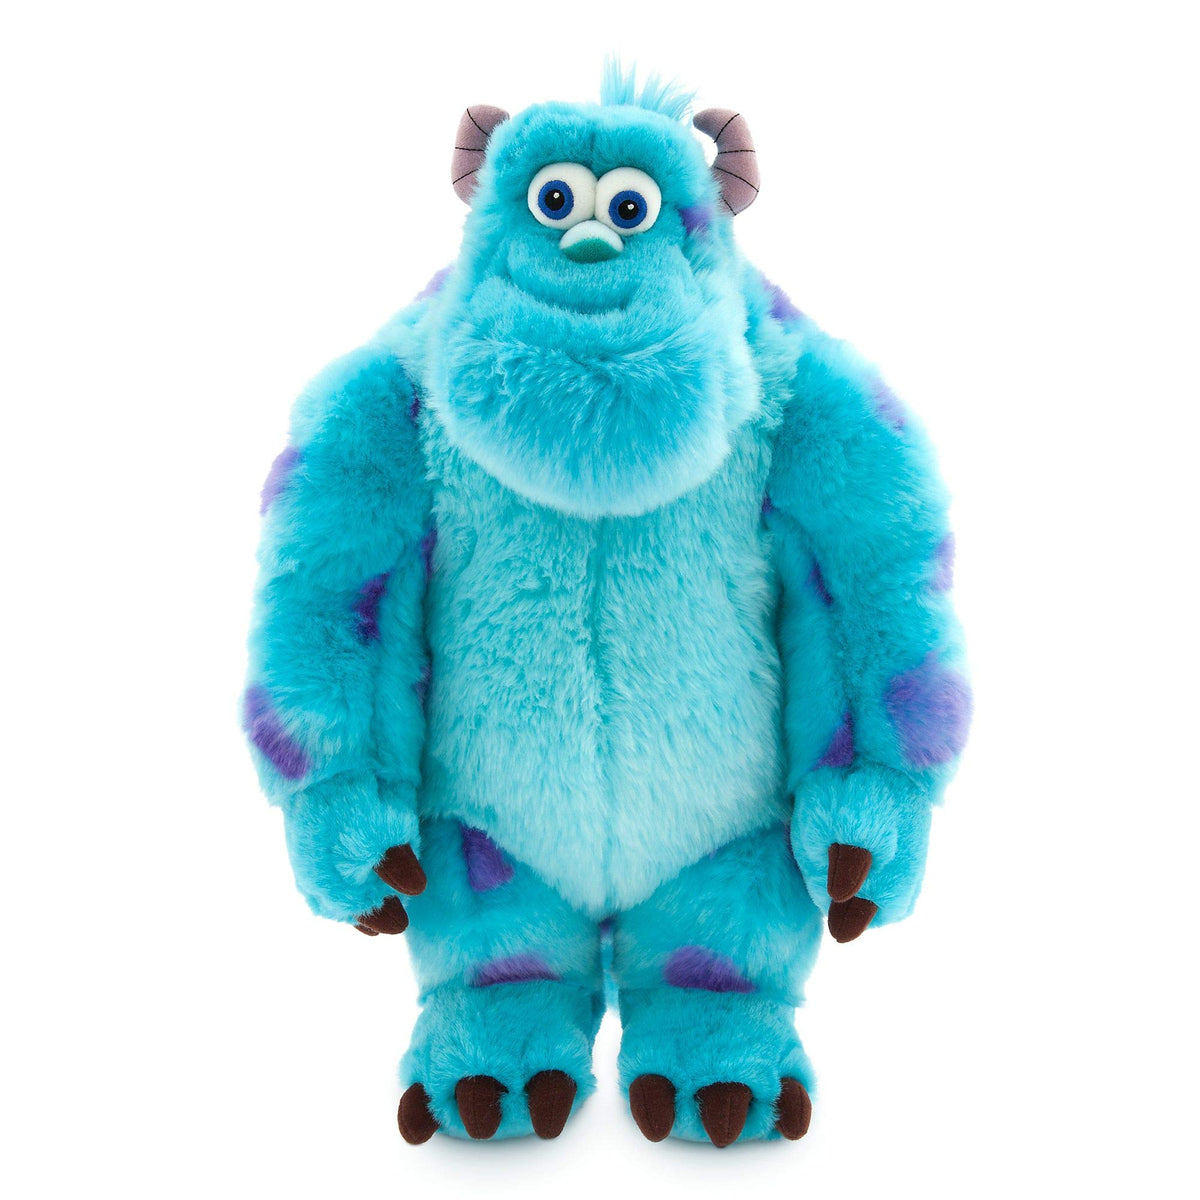 Disney Store Official Sulley Medium Soft Plush Toy, Monsters Inc, 38cm/14ÃƒÆ’Ã†â€™Ãƒâ€šÃ‚Â¢ÃƒÆ’Ã‚Â¢ÃƒÂ¢Ã¢â€šÂ¬Ã…Â¡Ãƒâ€šÃ‚Â¬ÃƒÆ’Ã¢â‚¬Å¡Ãƒâ€šÃ‚Â, Cuddly Character Made with Soft-Touch Fabric and 3D Features, Suitable for All Ages